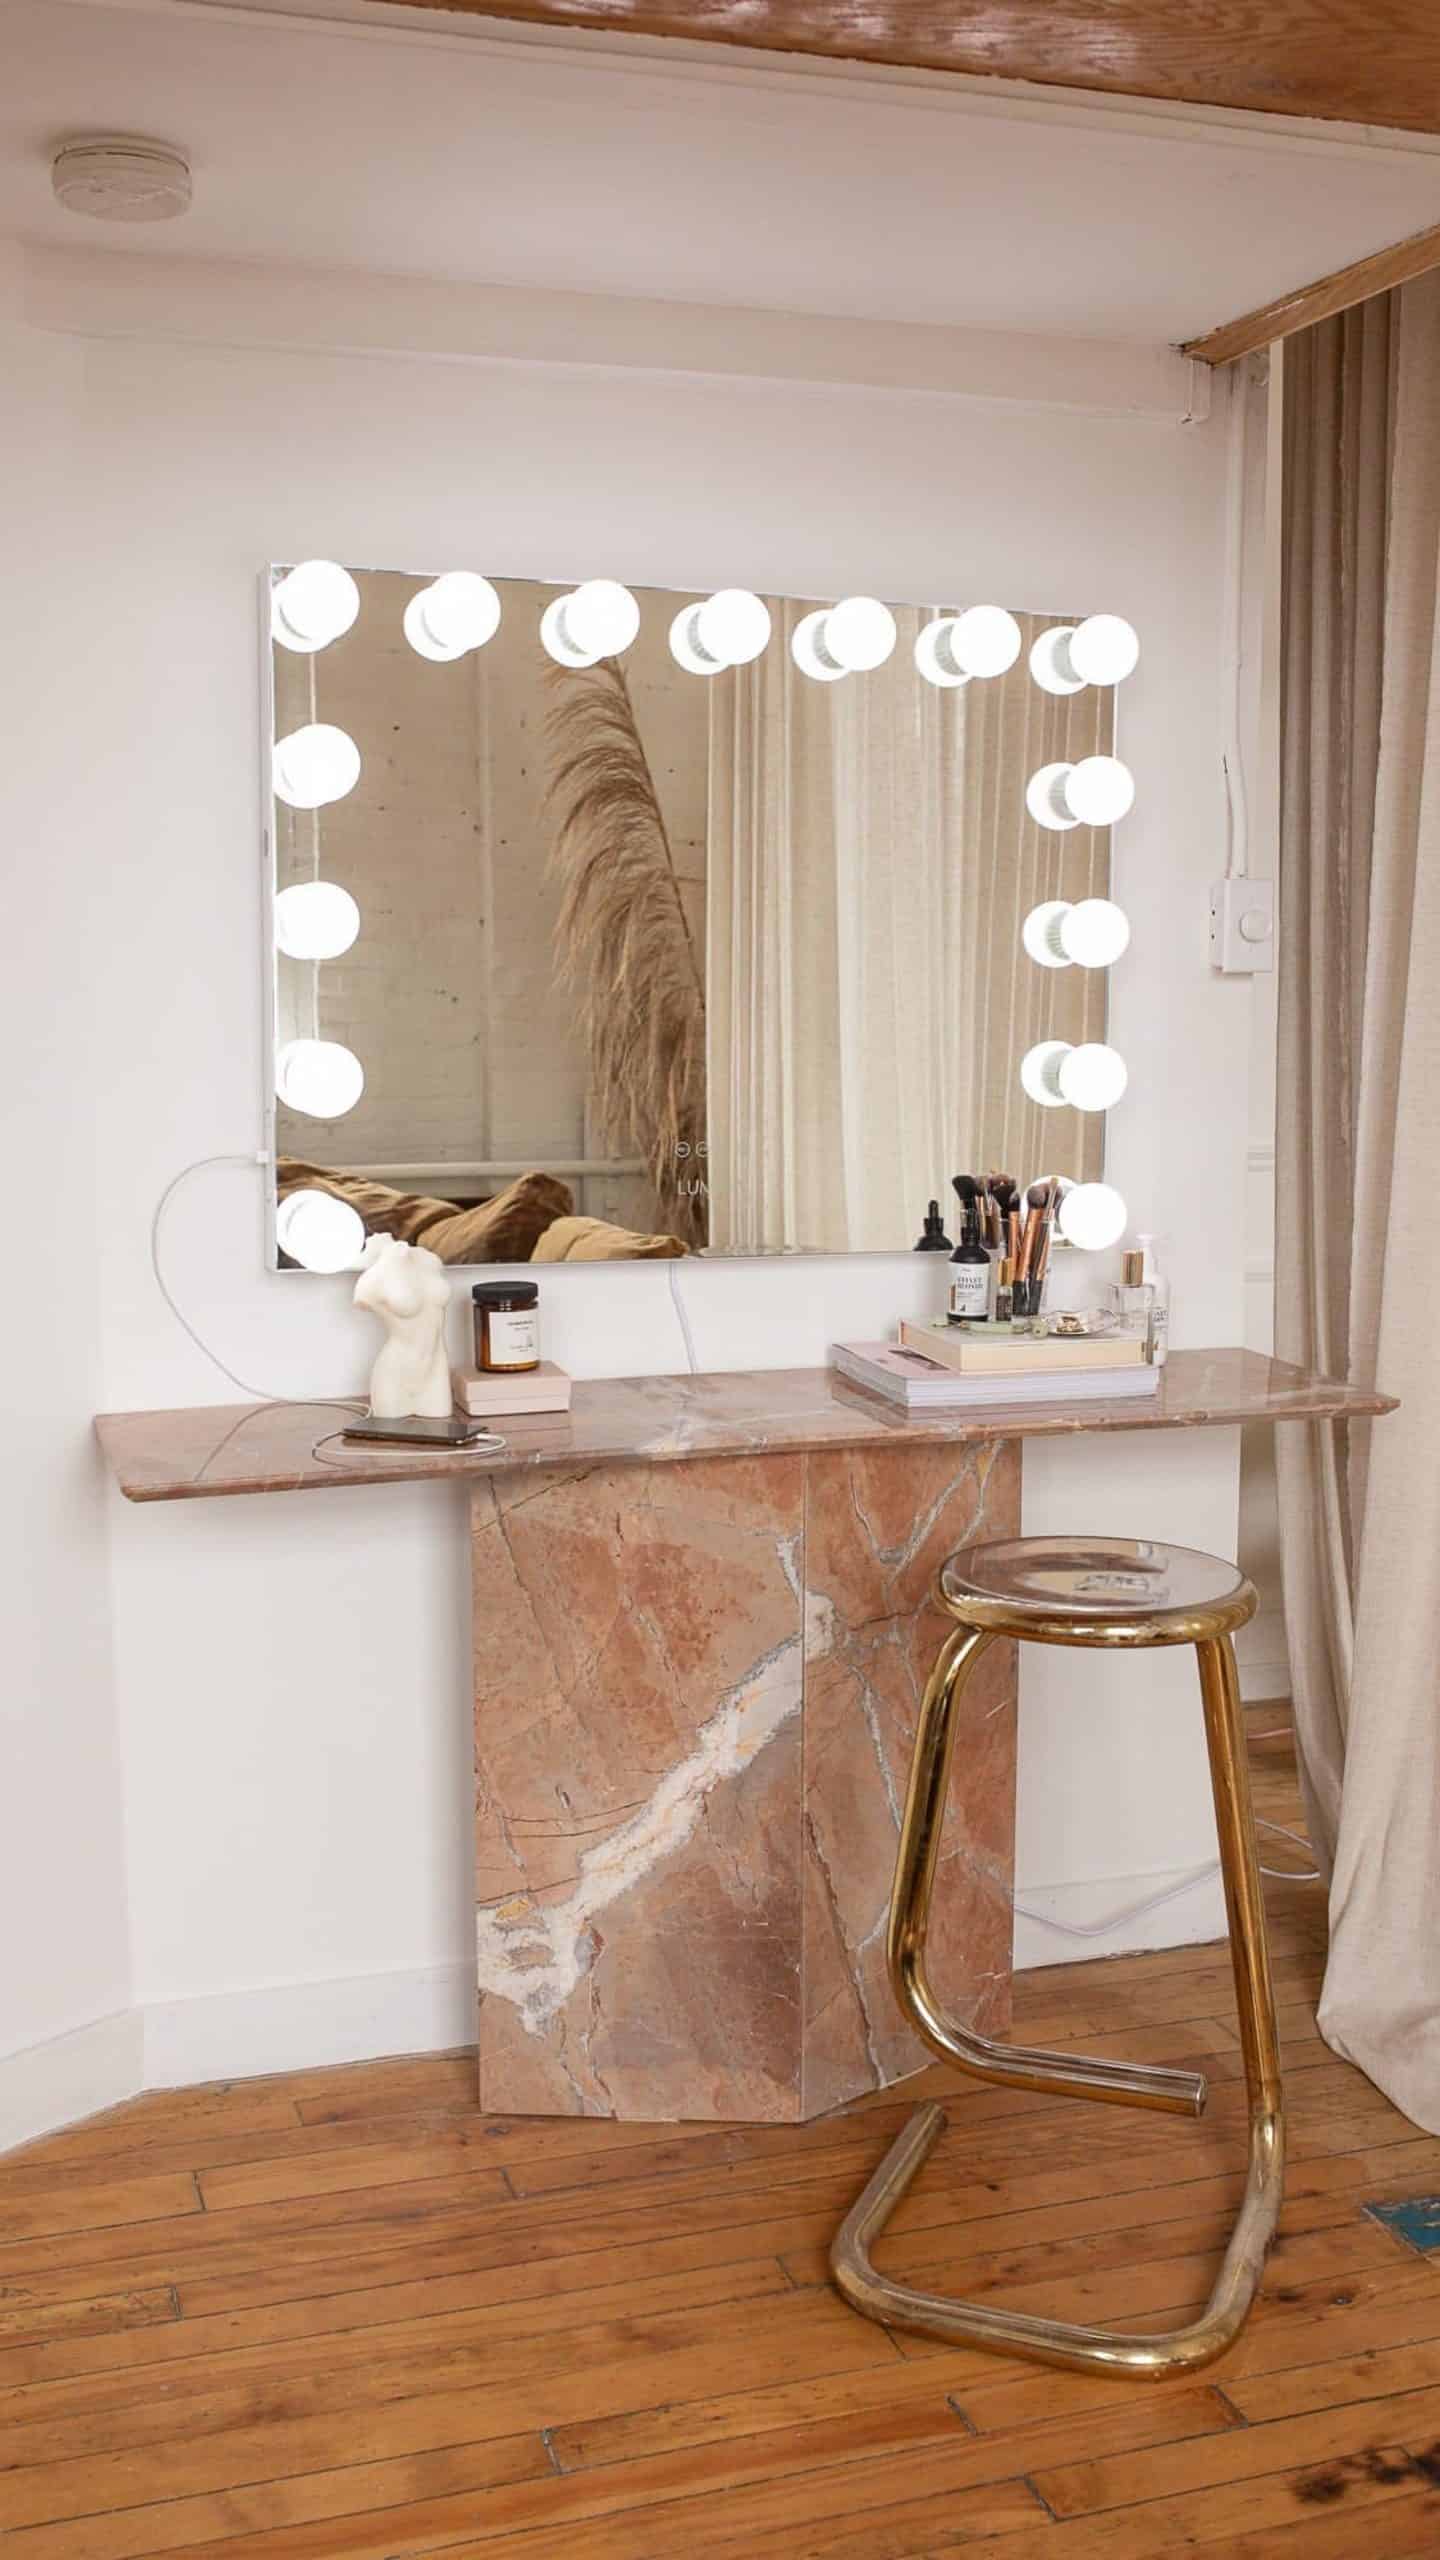 DIY Vanity Mirror Projects